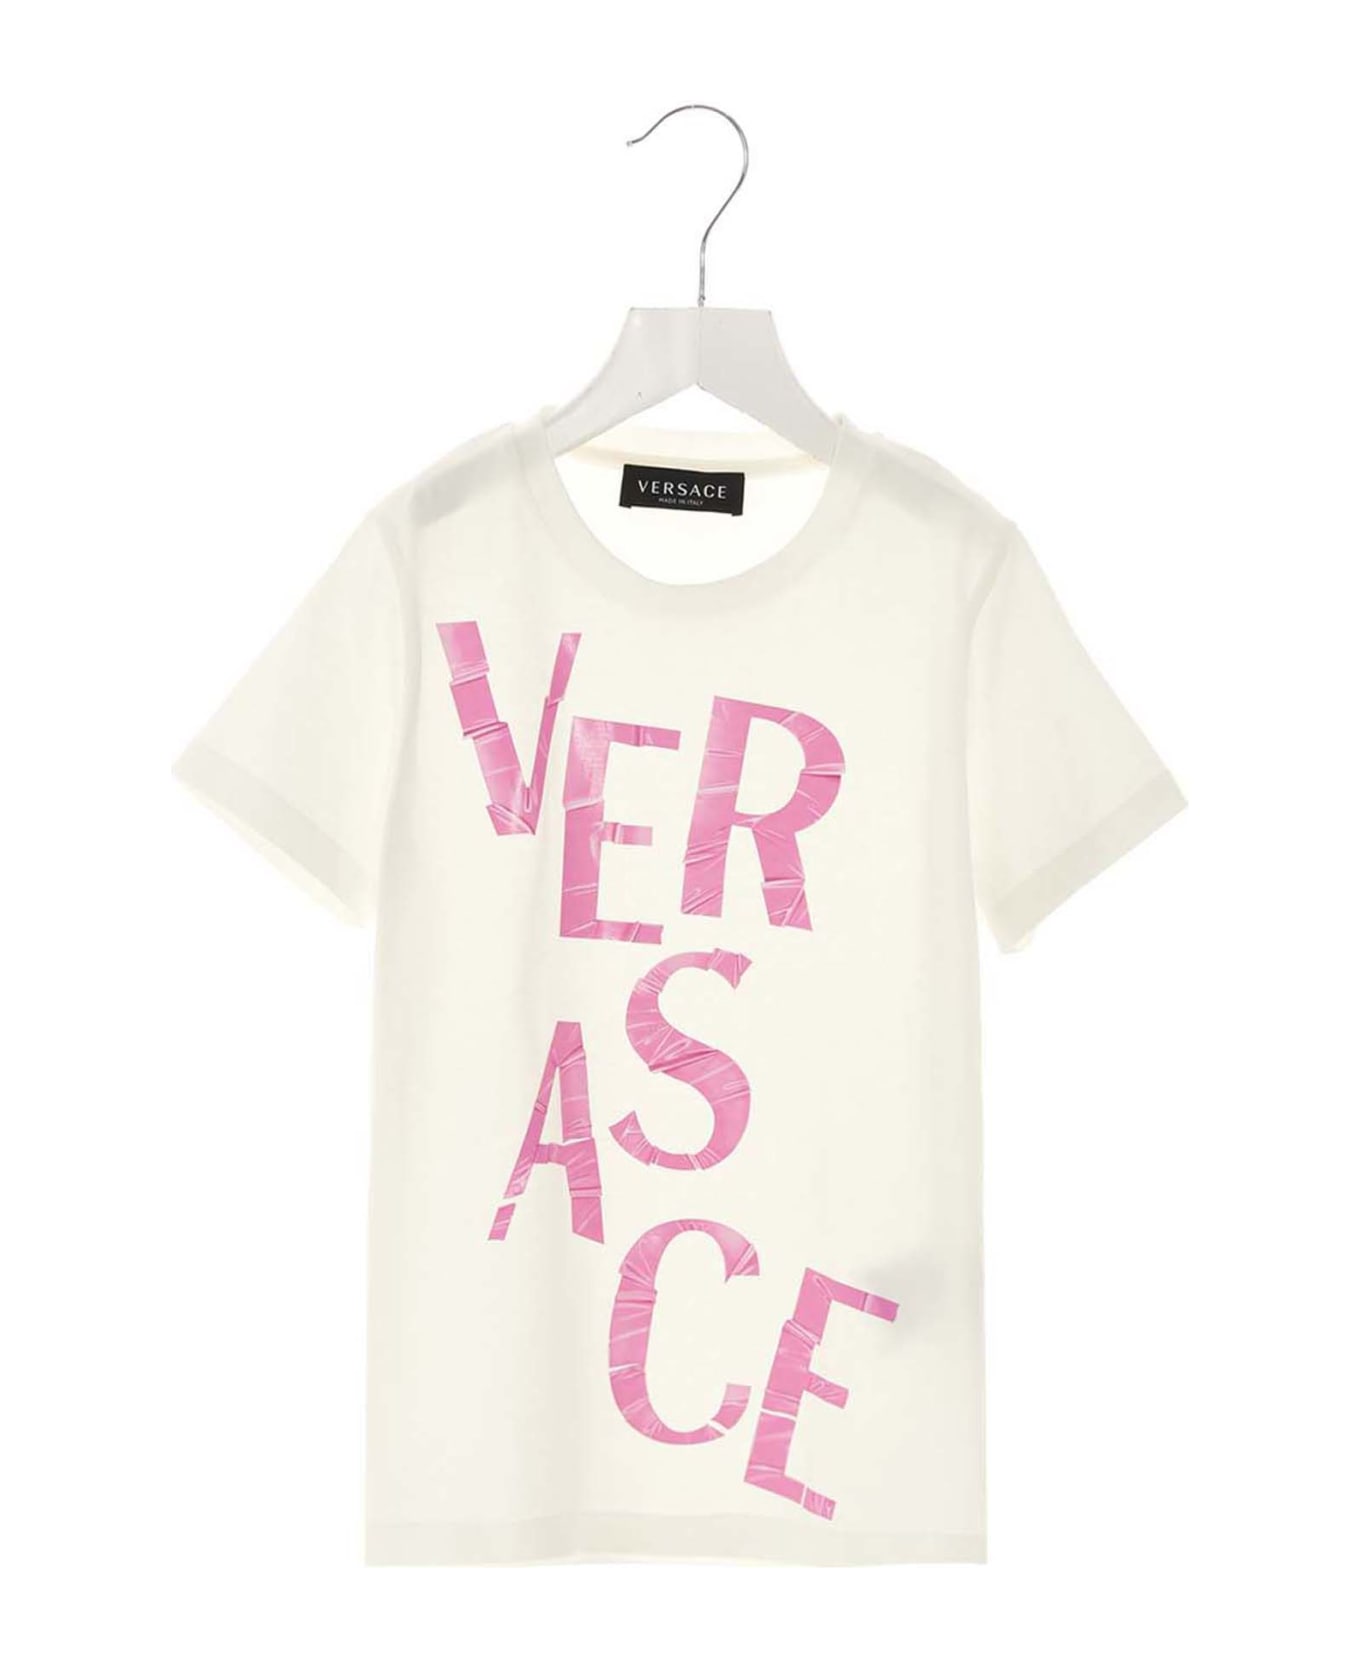 Versace Logo T-shirt - White